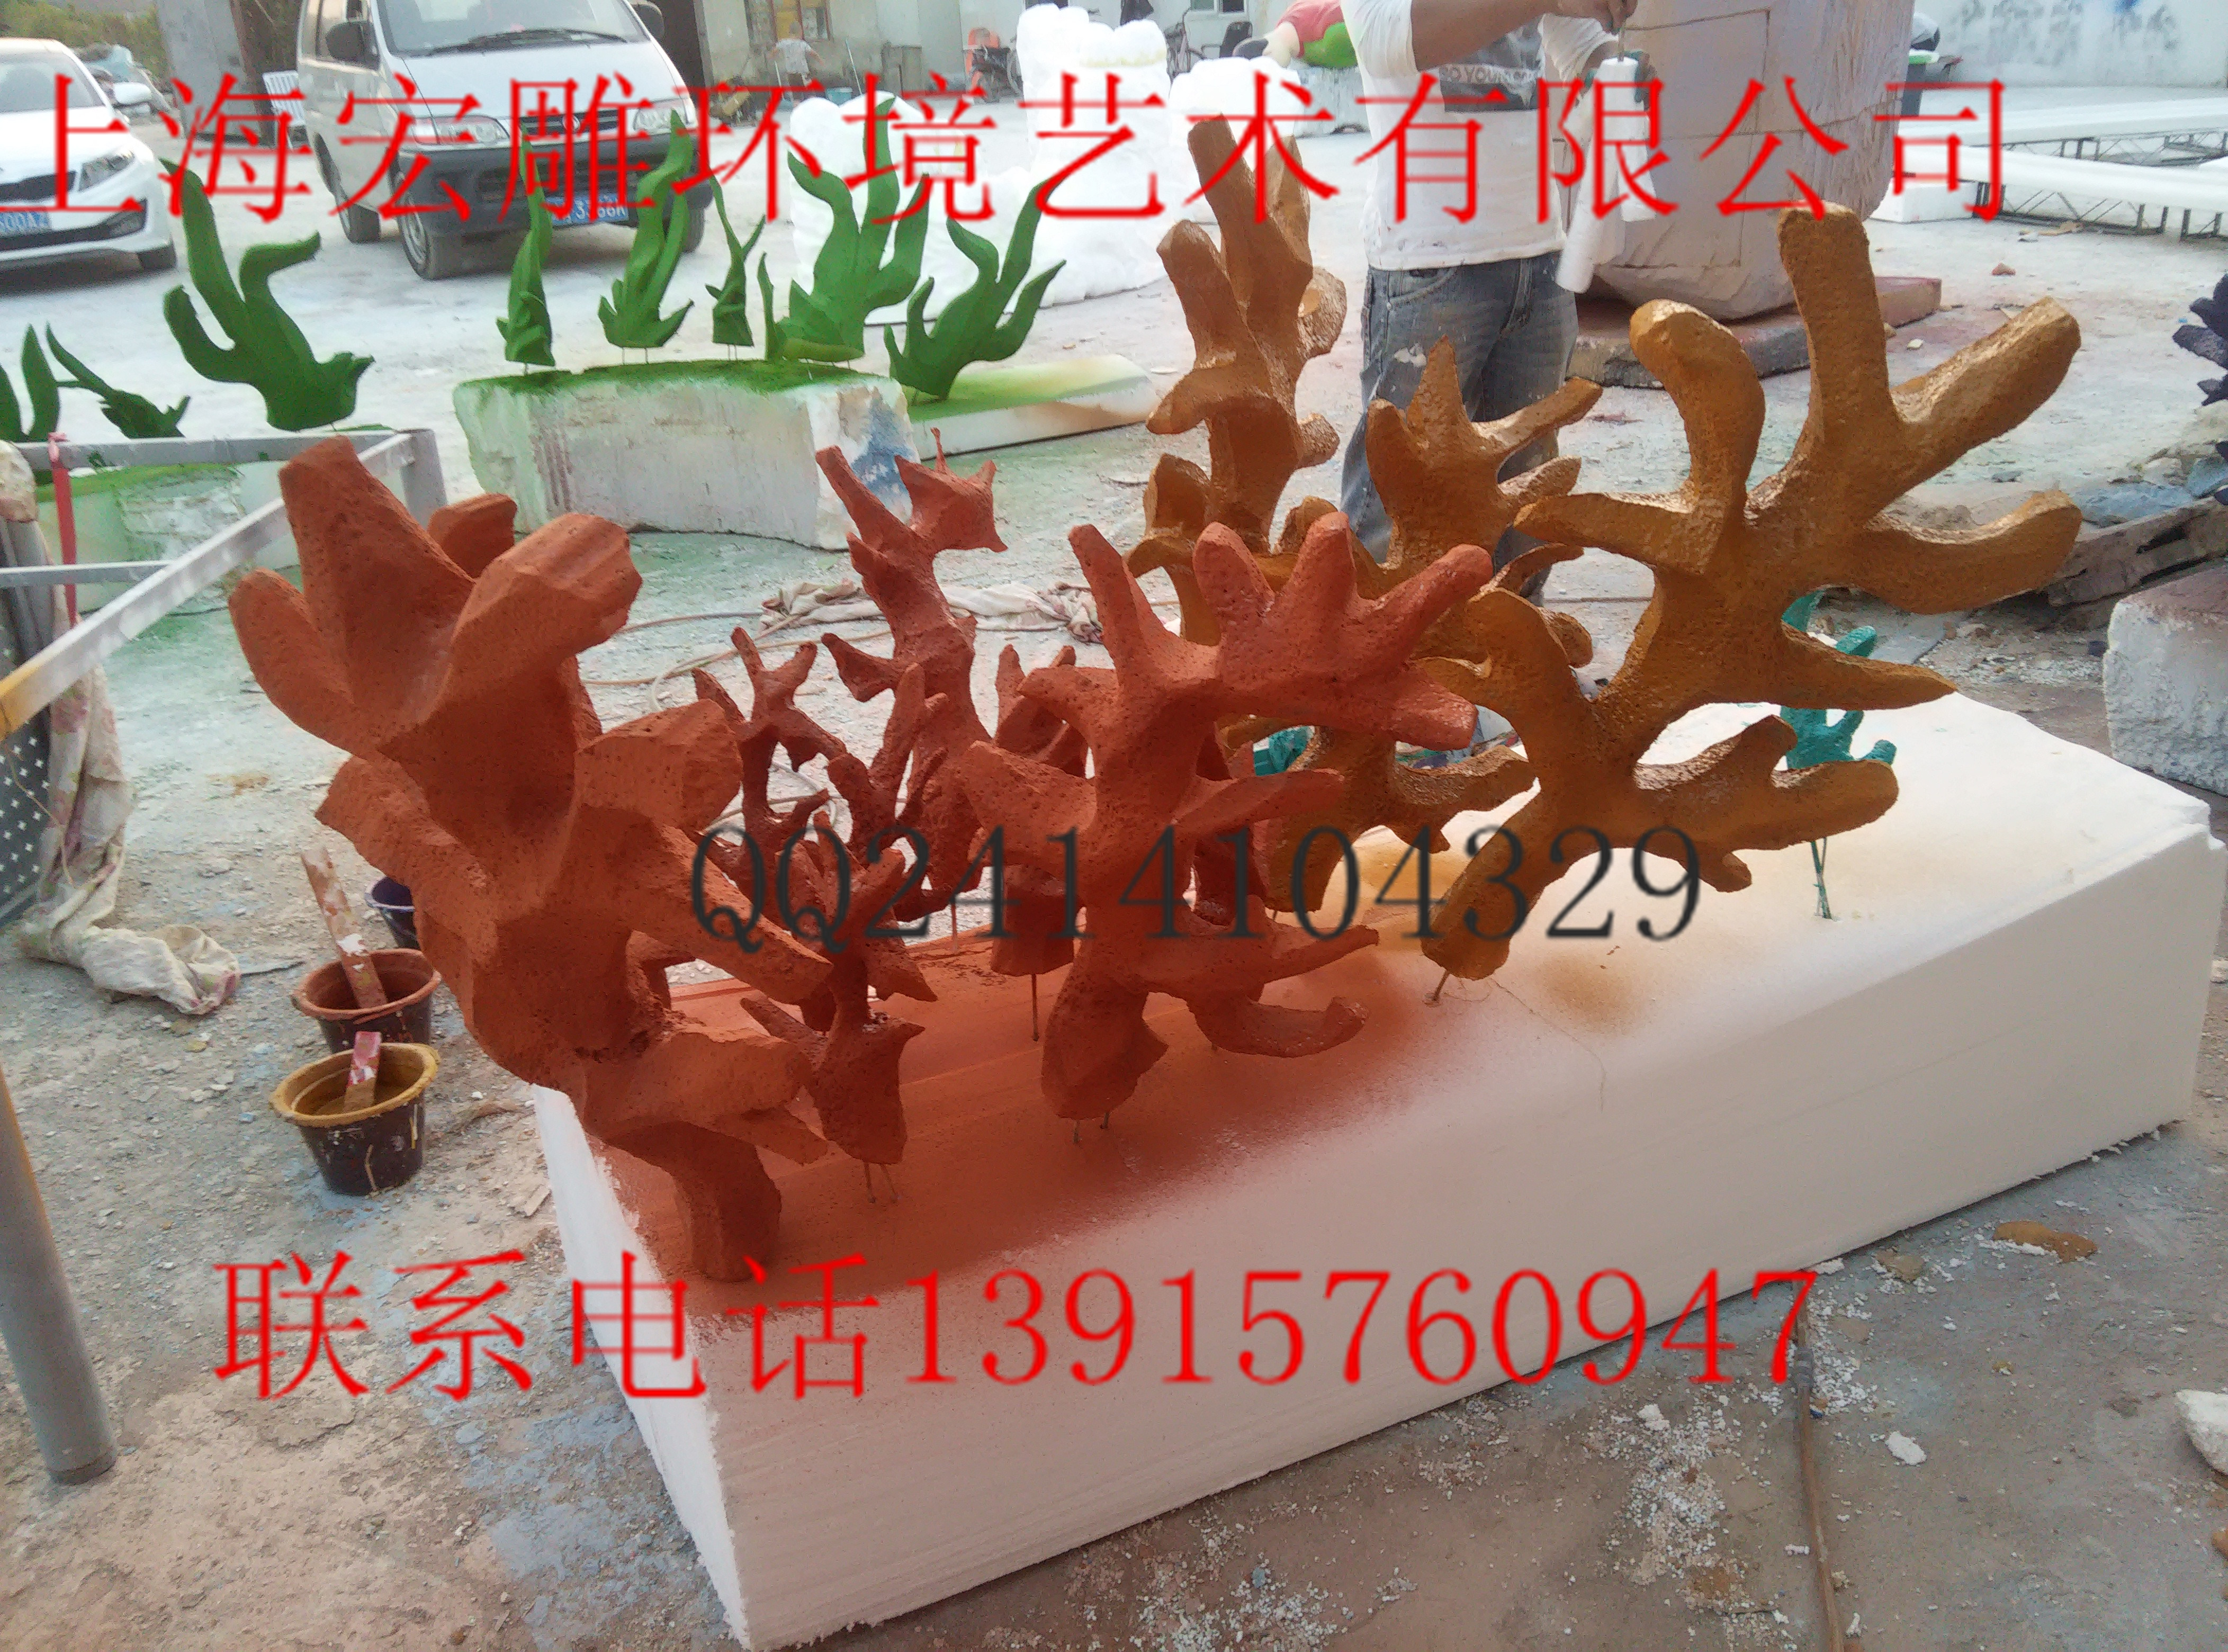 上海宏雕雕塑泡上海宏雕雕塑泡沫玻璃钢雕塑沫玻珊瑚雕塑图片